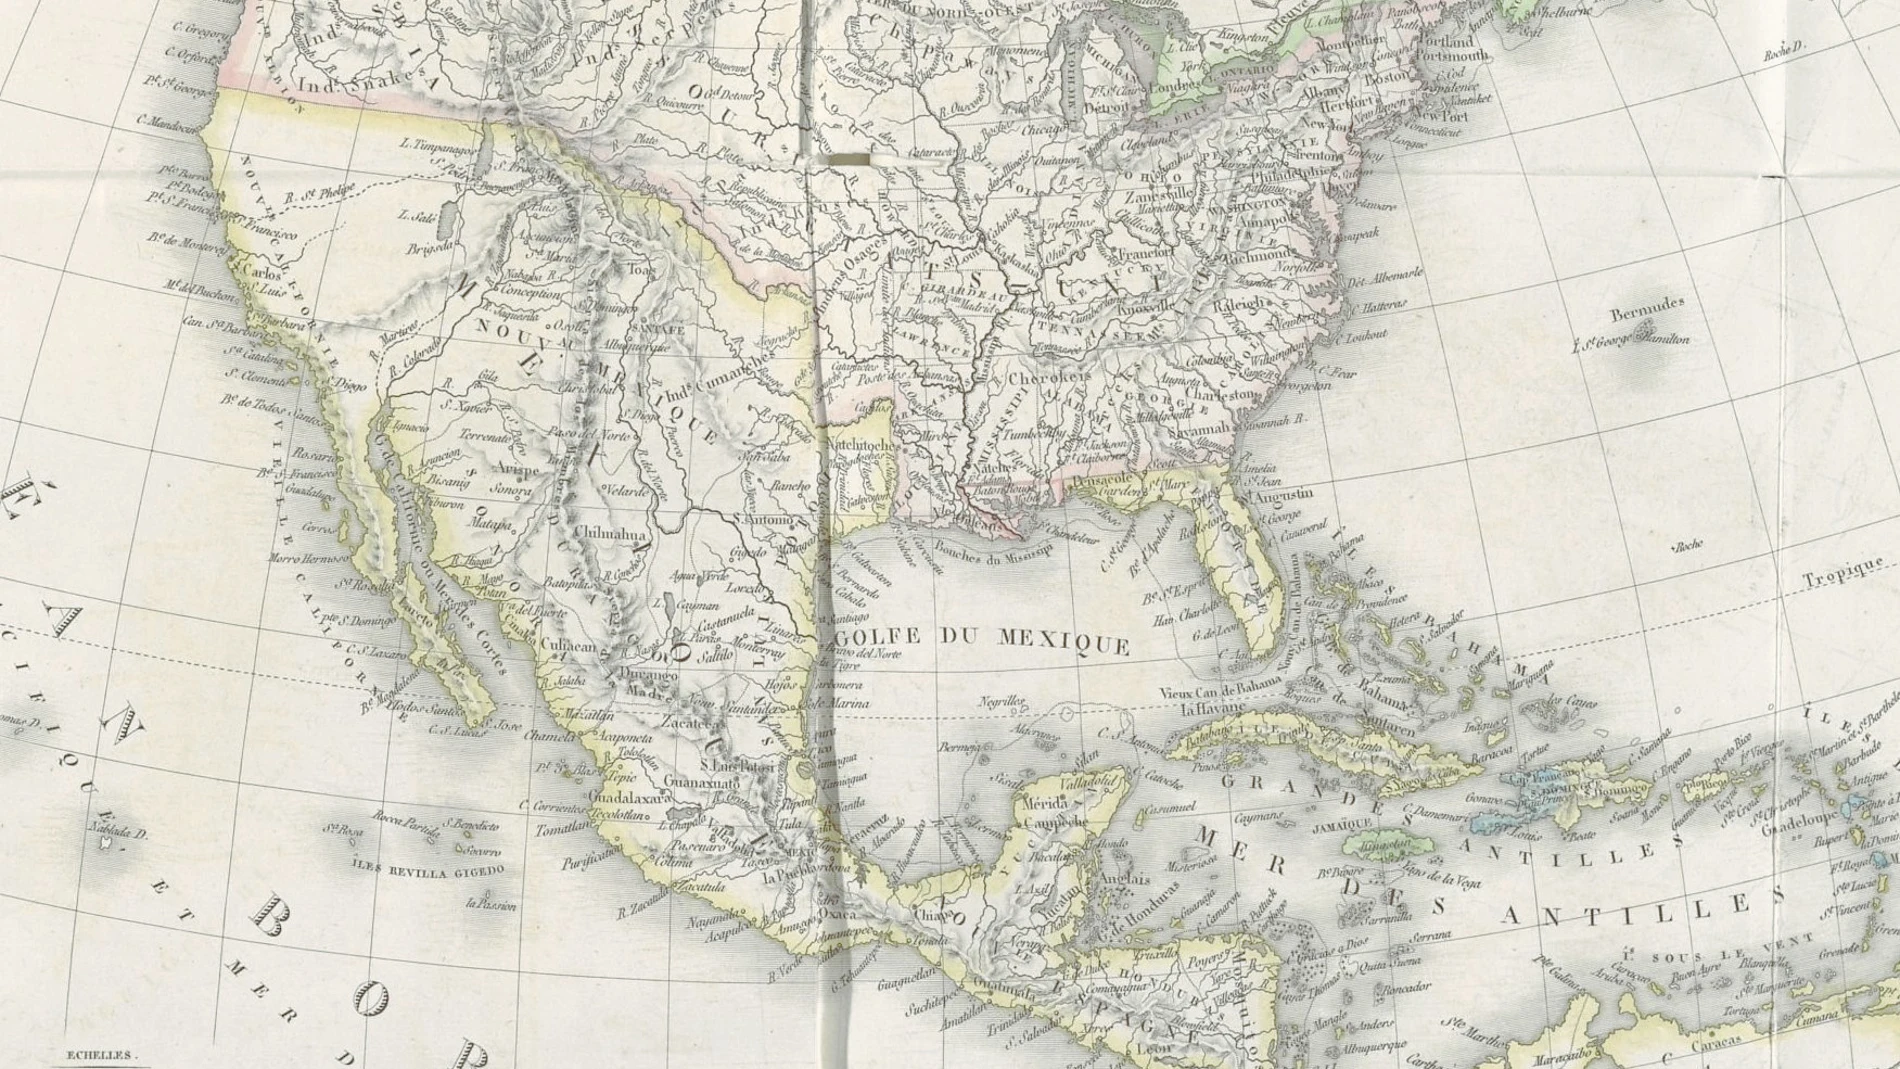 Mapa francés de 1820 de la «América septentrional» en el libro de Luis de Onís que conserva la Biblioteca Nacional